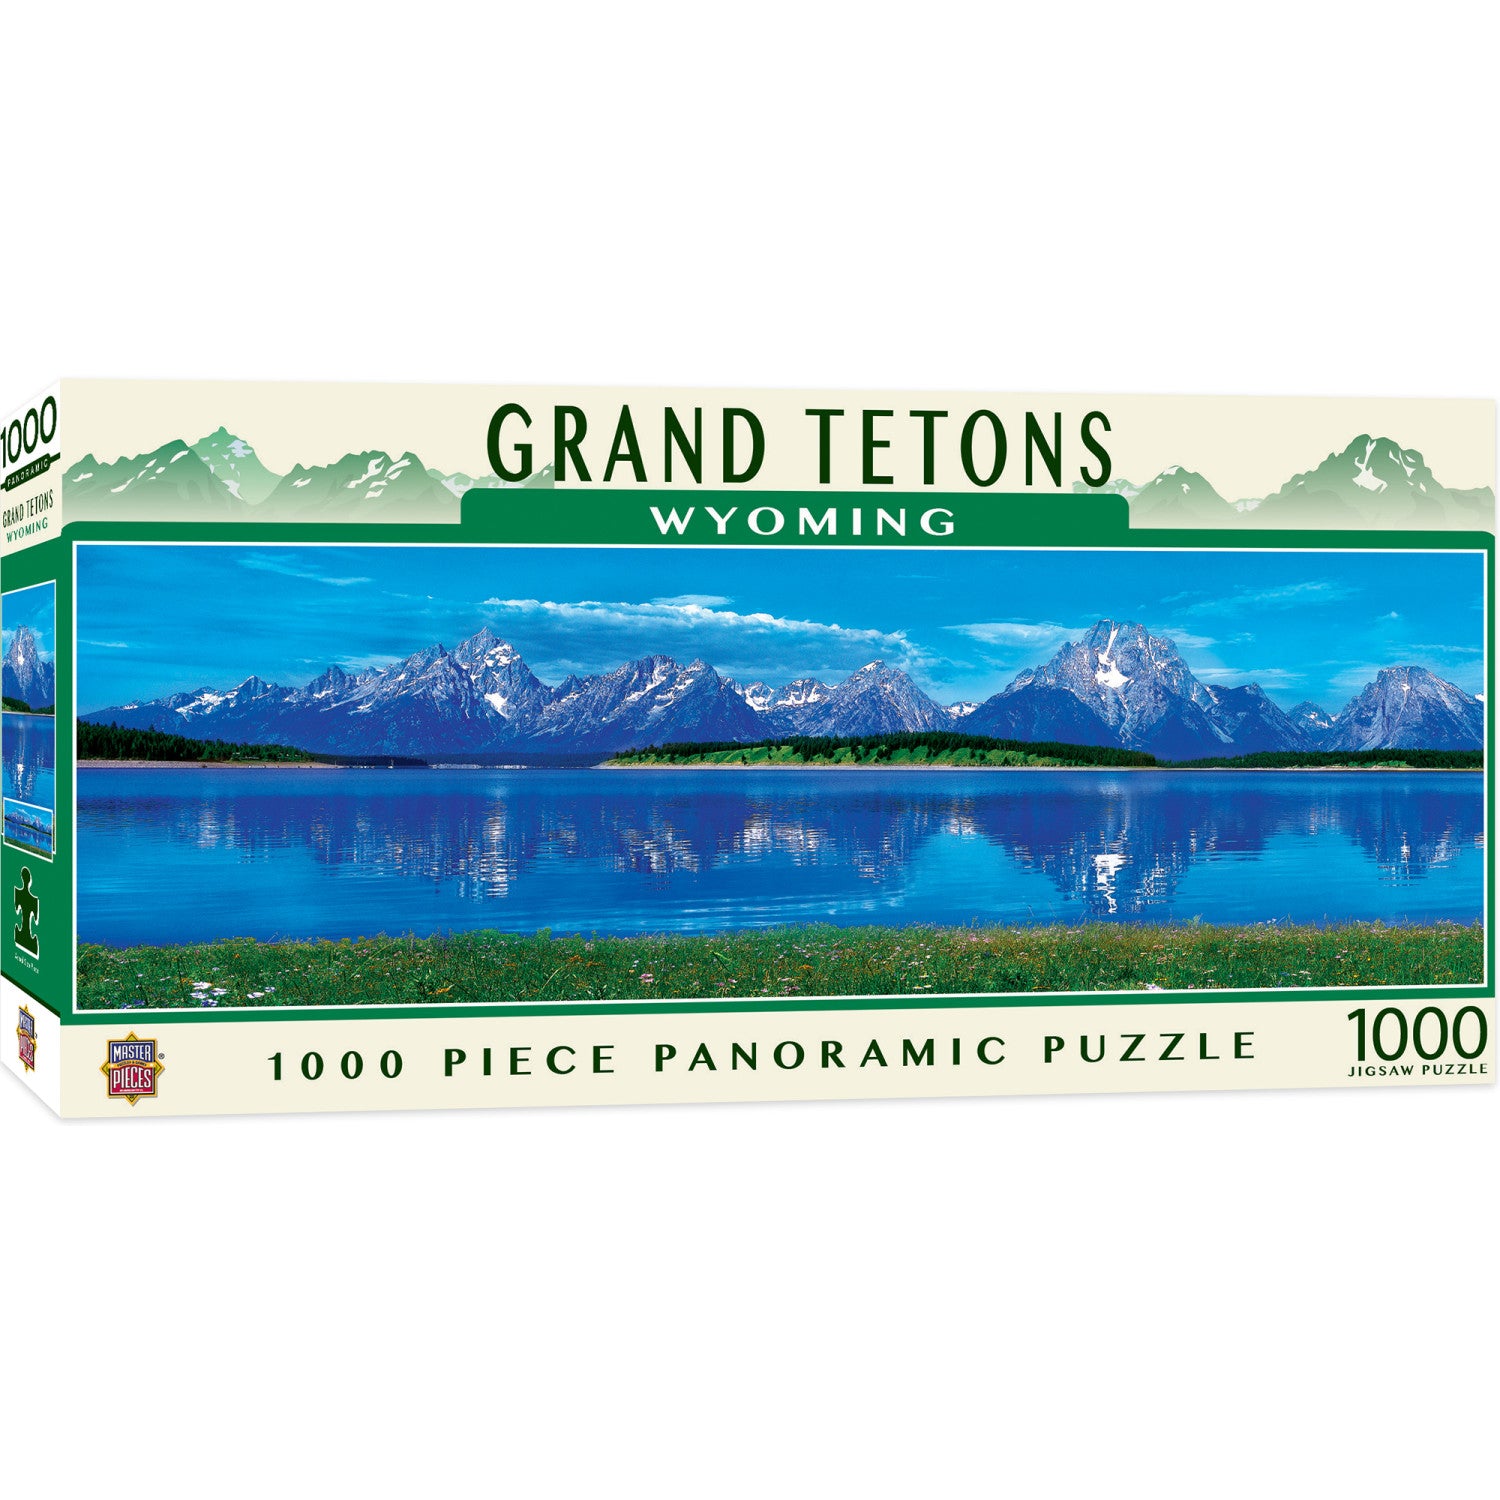 Grand Tetons, Wyoming 1000 Piece Panoramic Jigsaw Puzzle